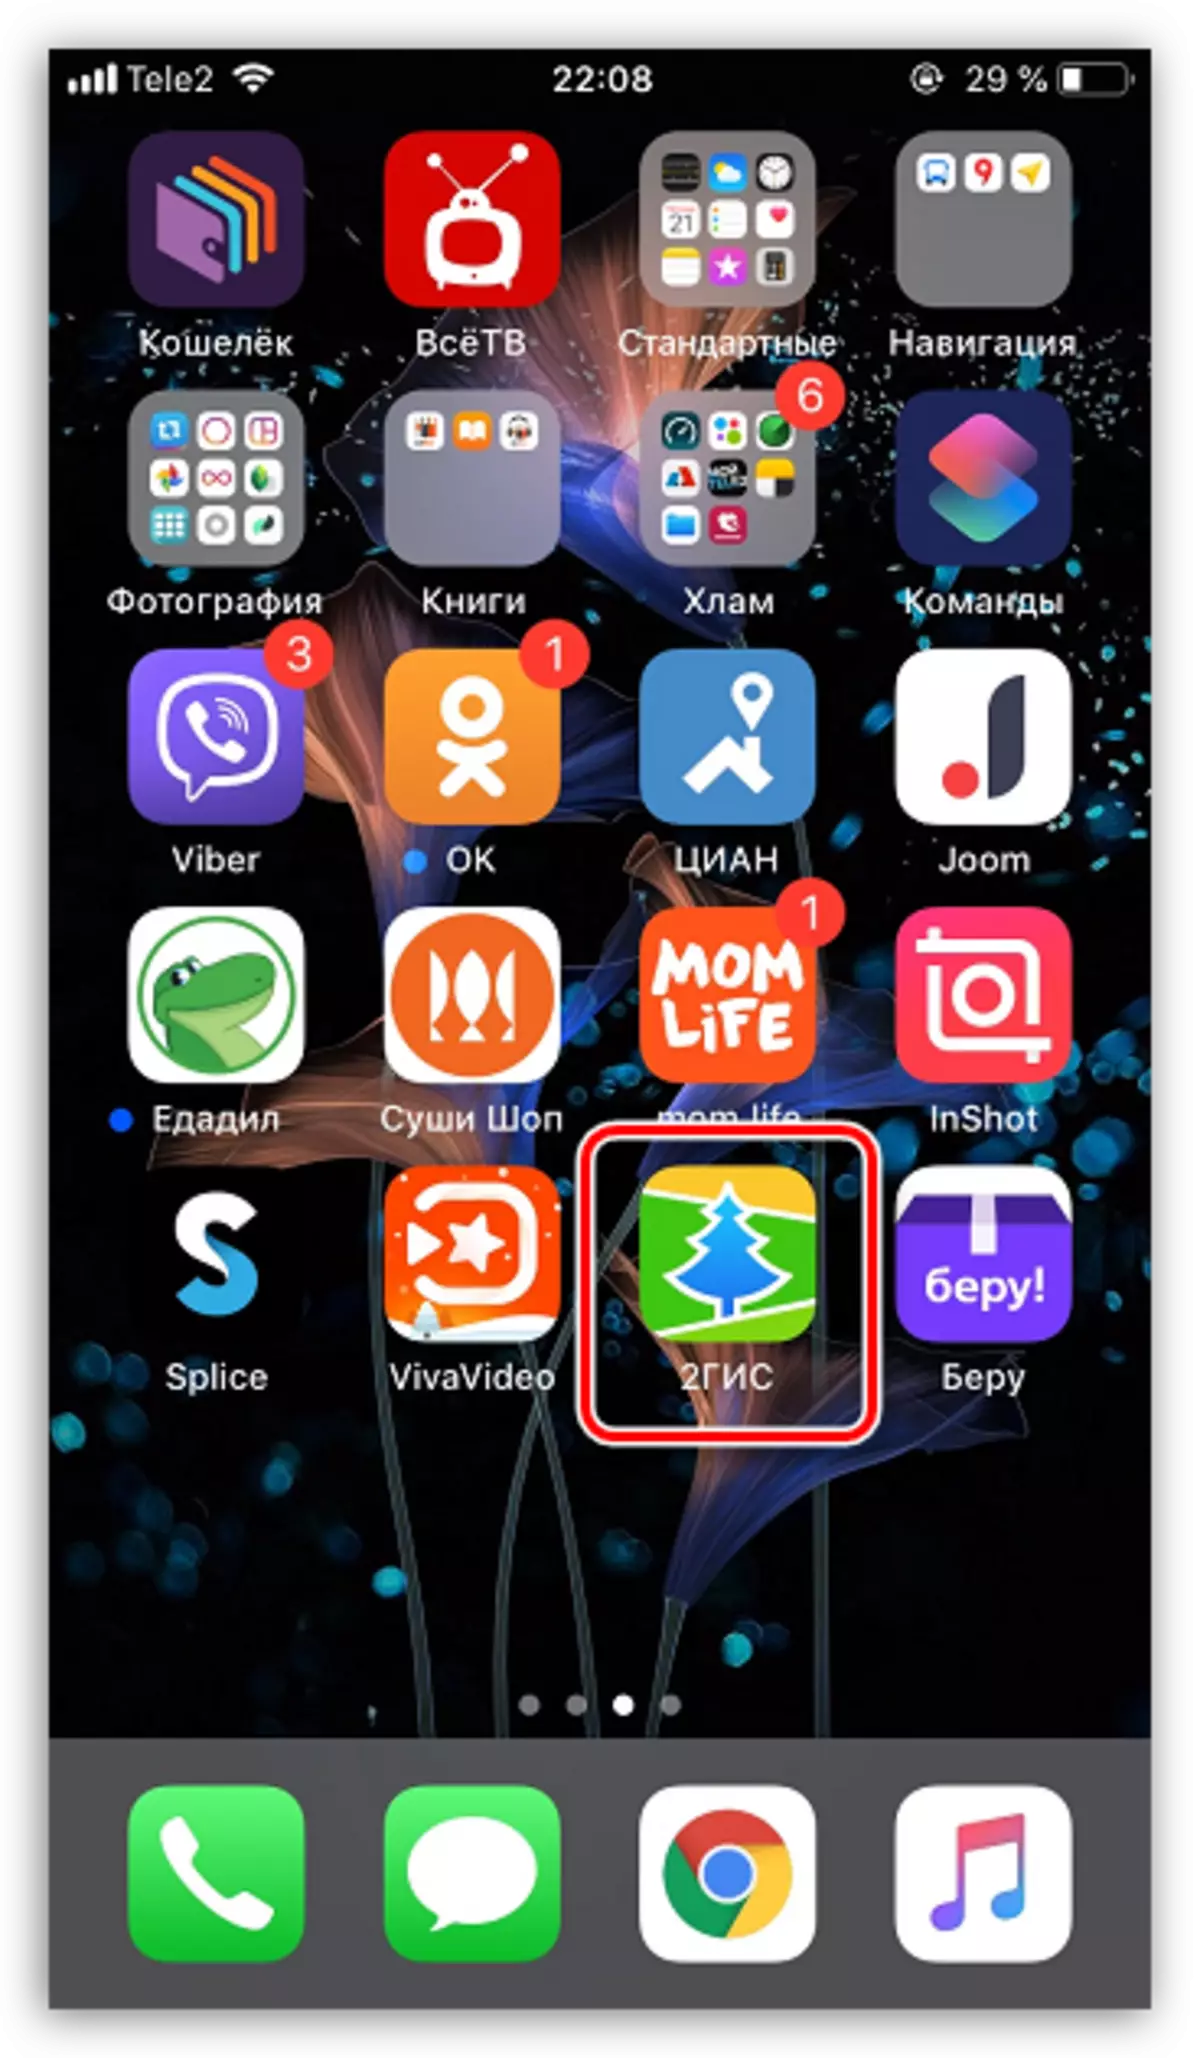 Pobrano aplikację z App Store na iPhone